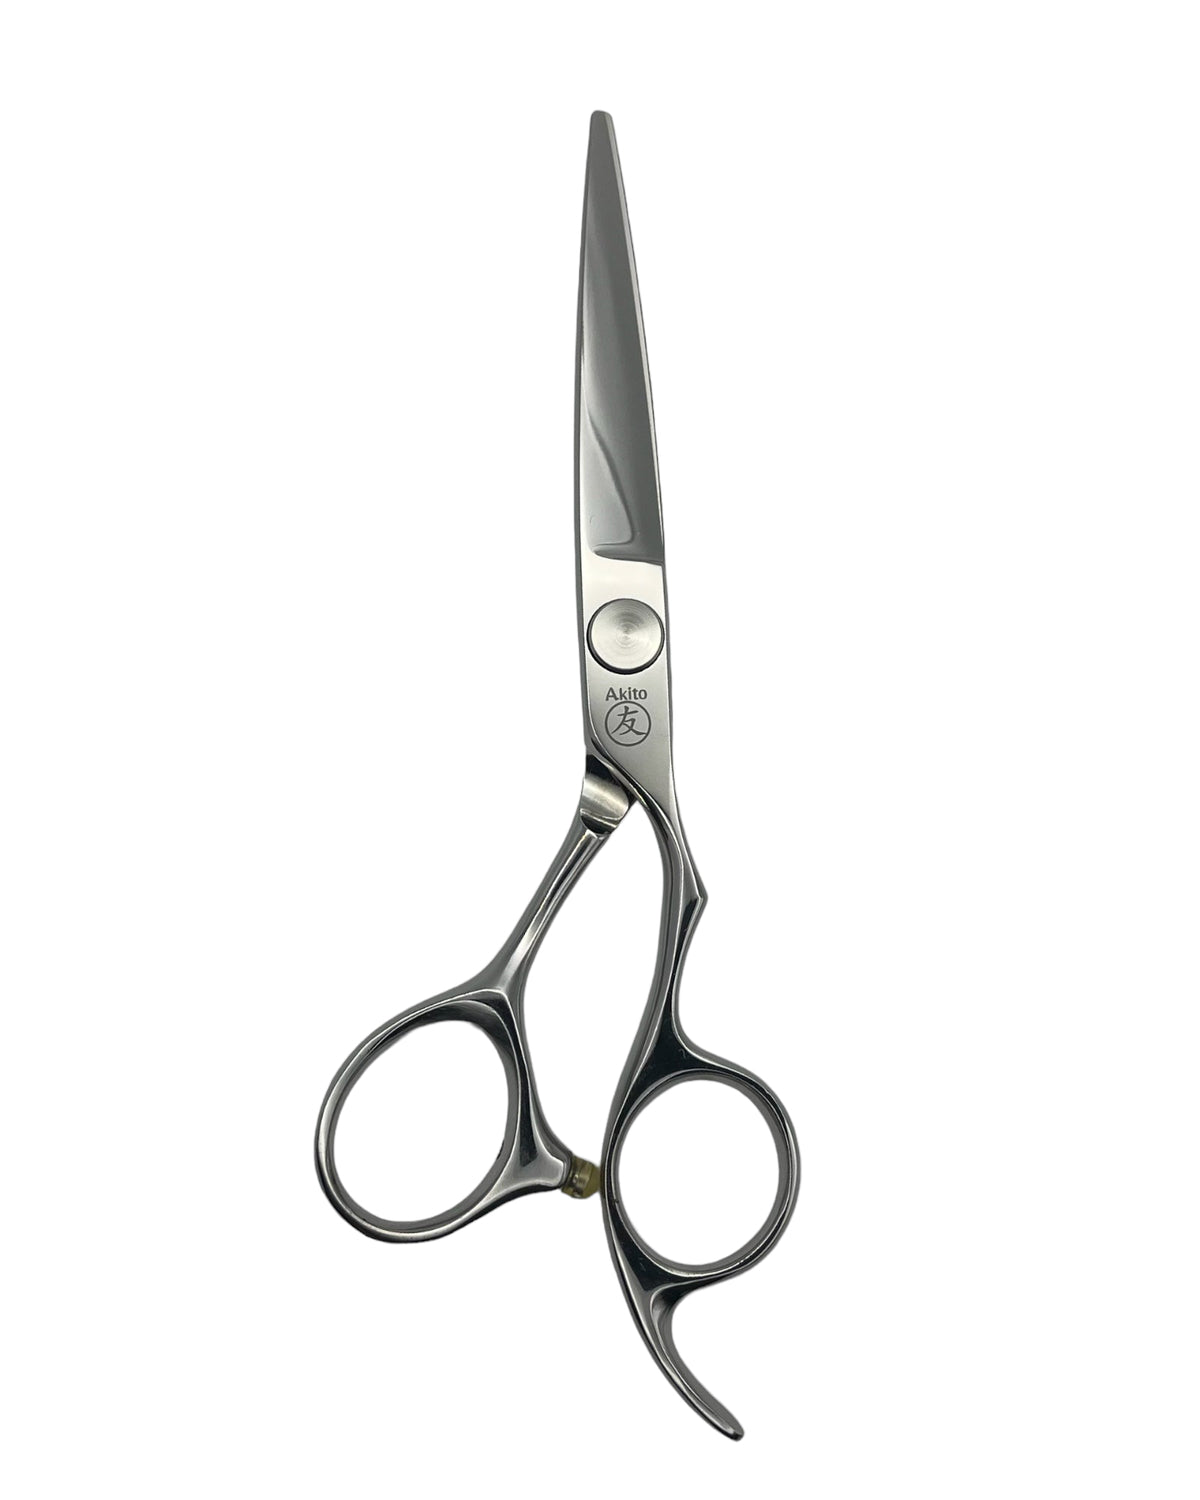 Takara 5.5 inch hair cutting scissors